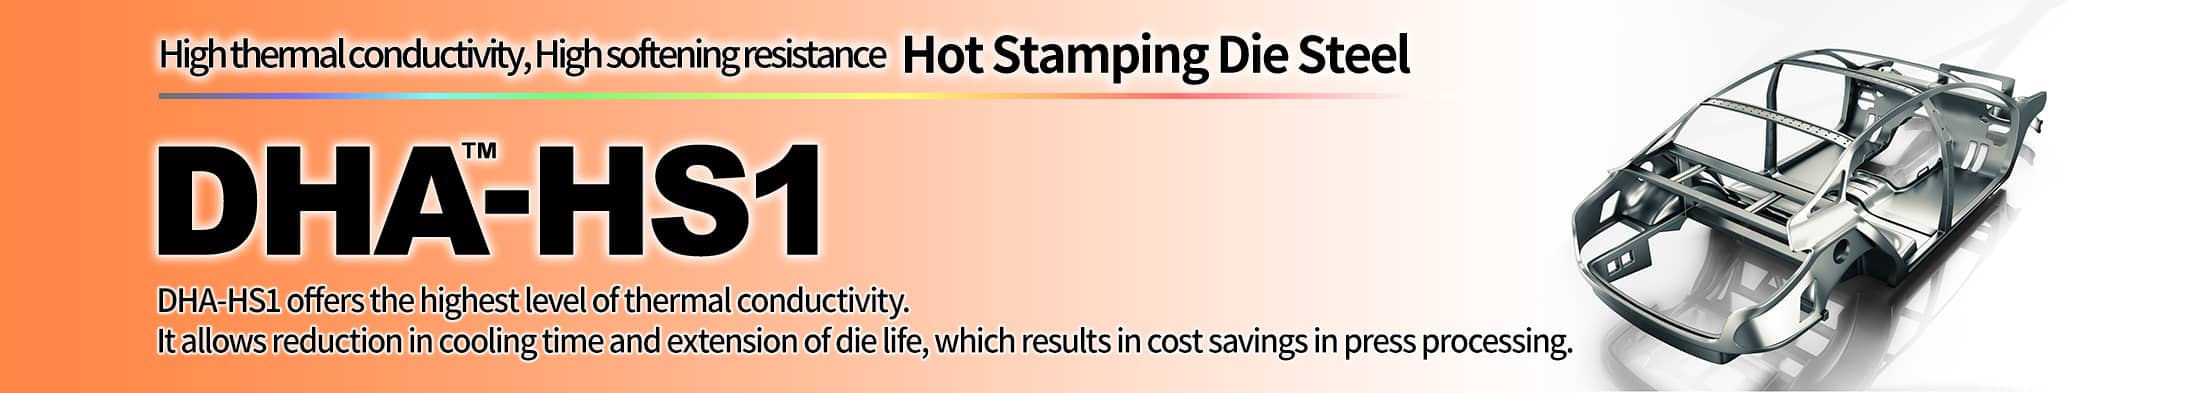 Hot Stamping Die Steel DHA-HS1